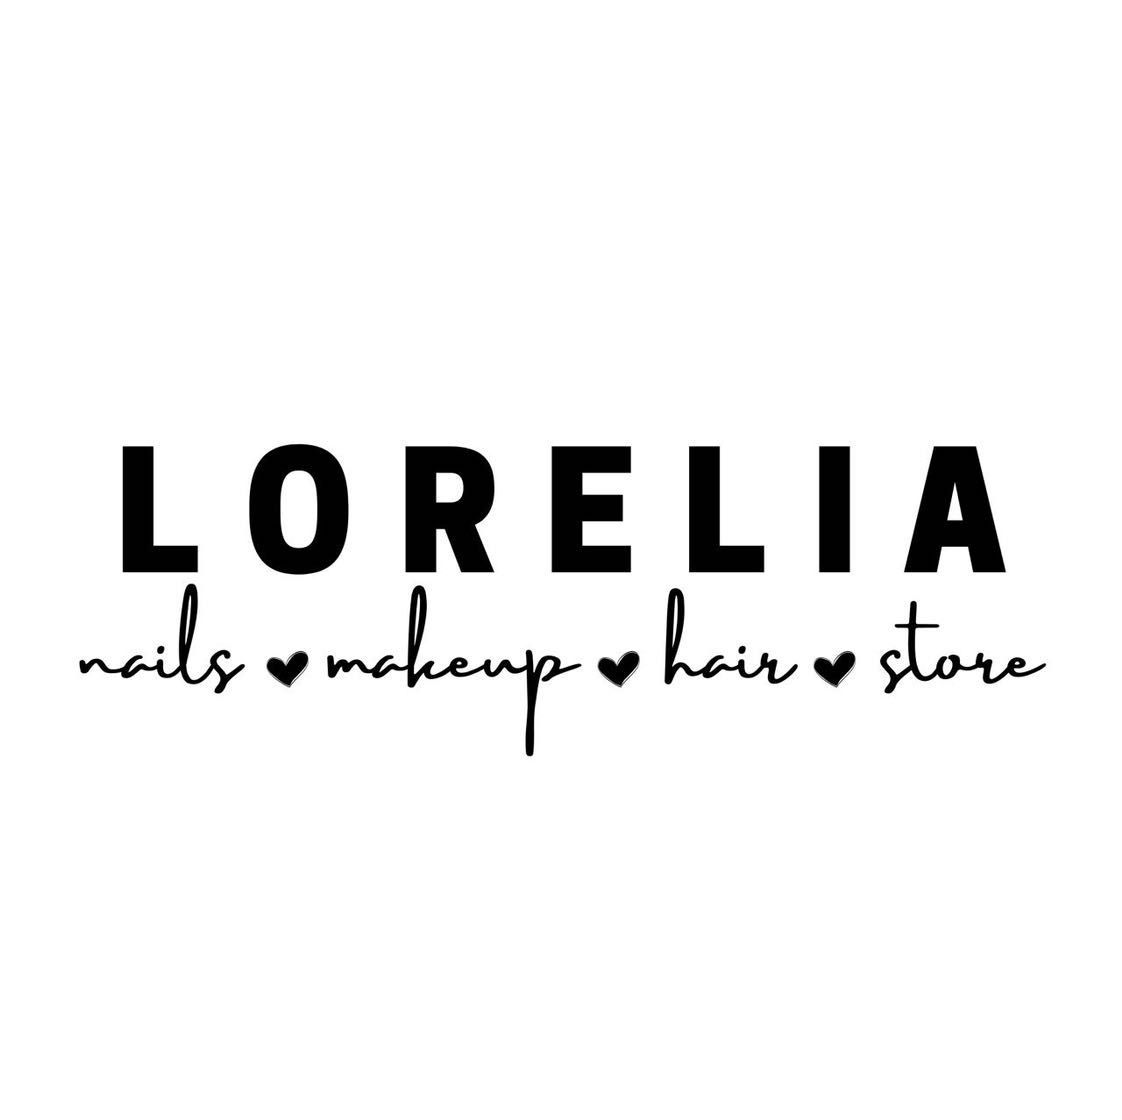 Lorelia, Avenida del Cortijo, 4124, 64890, Monterrey